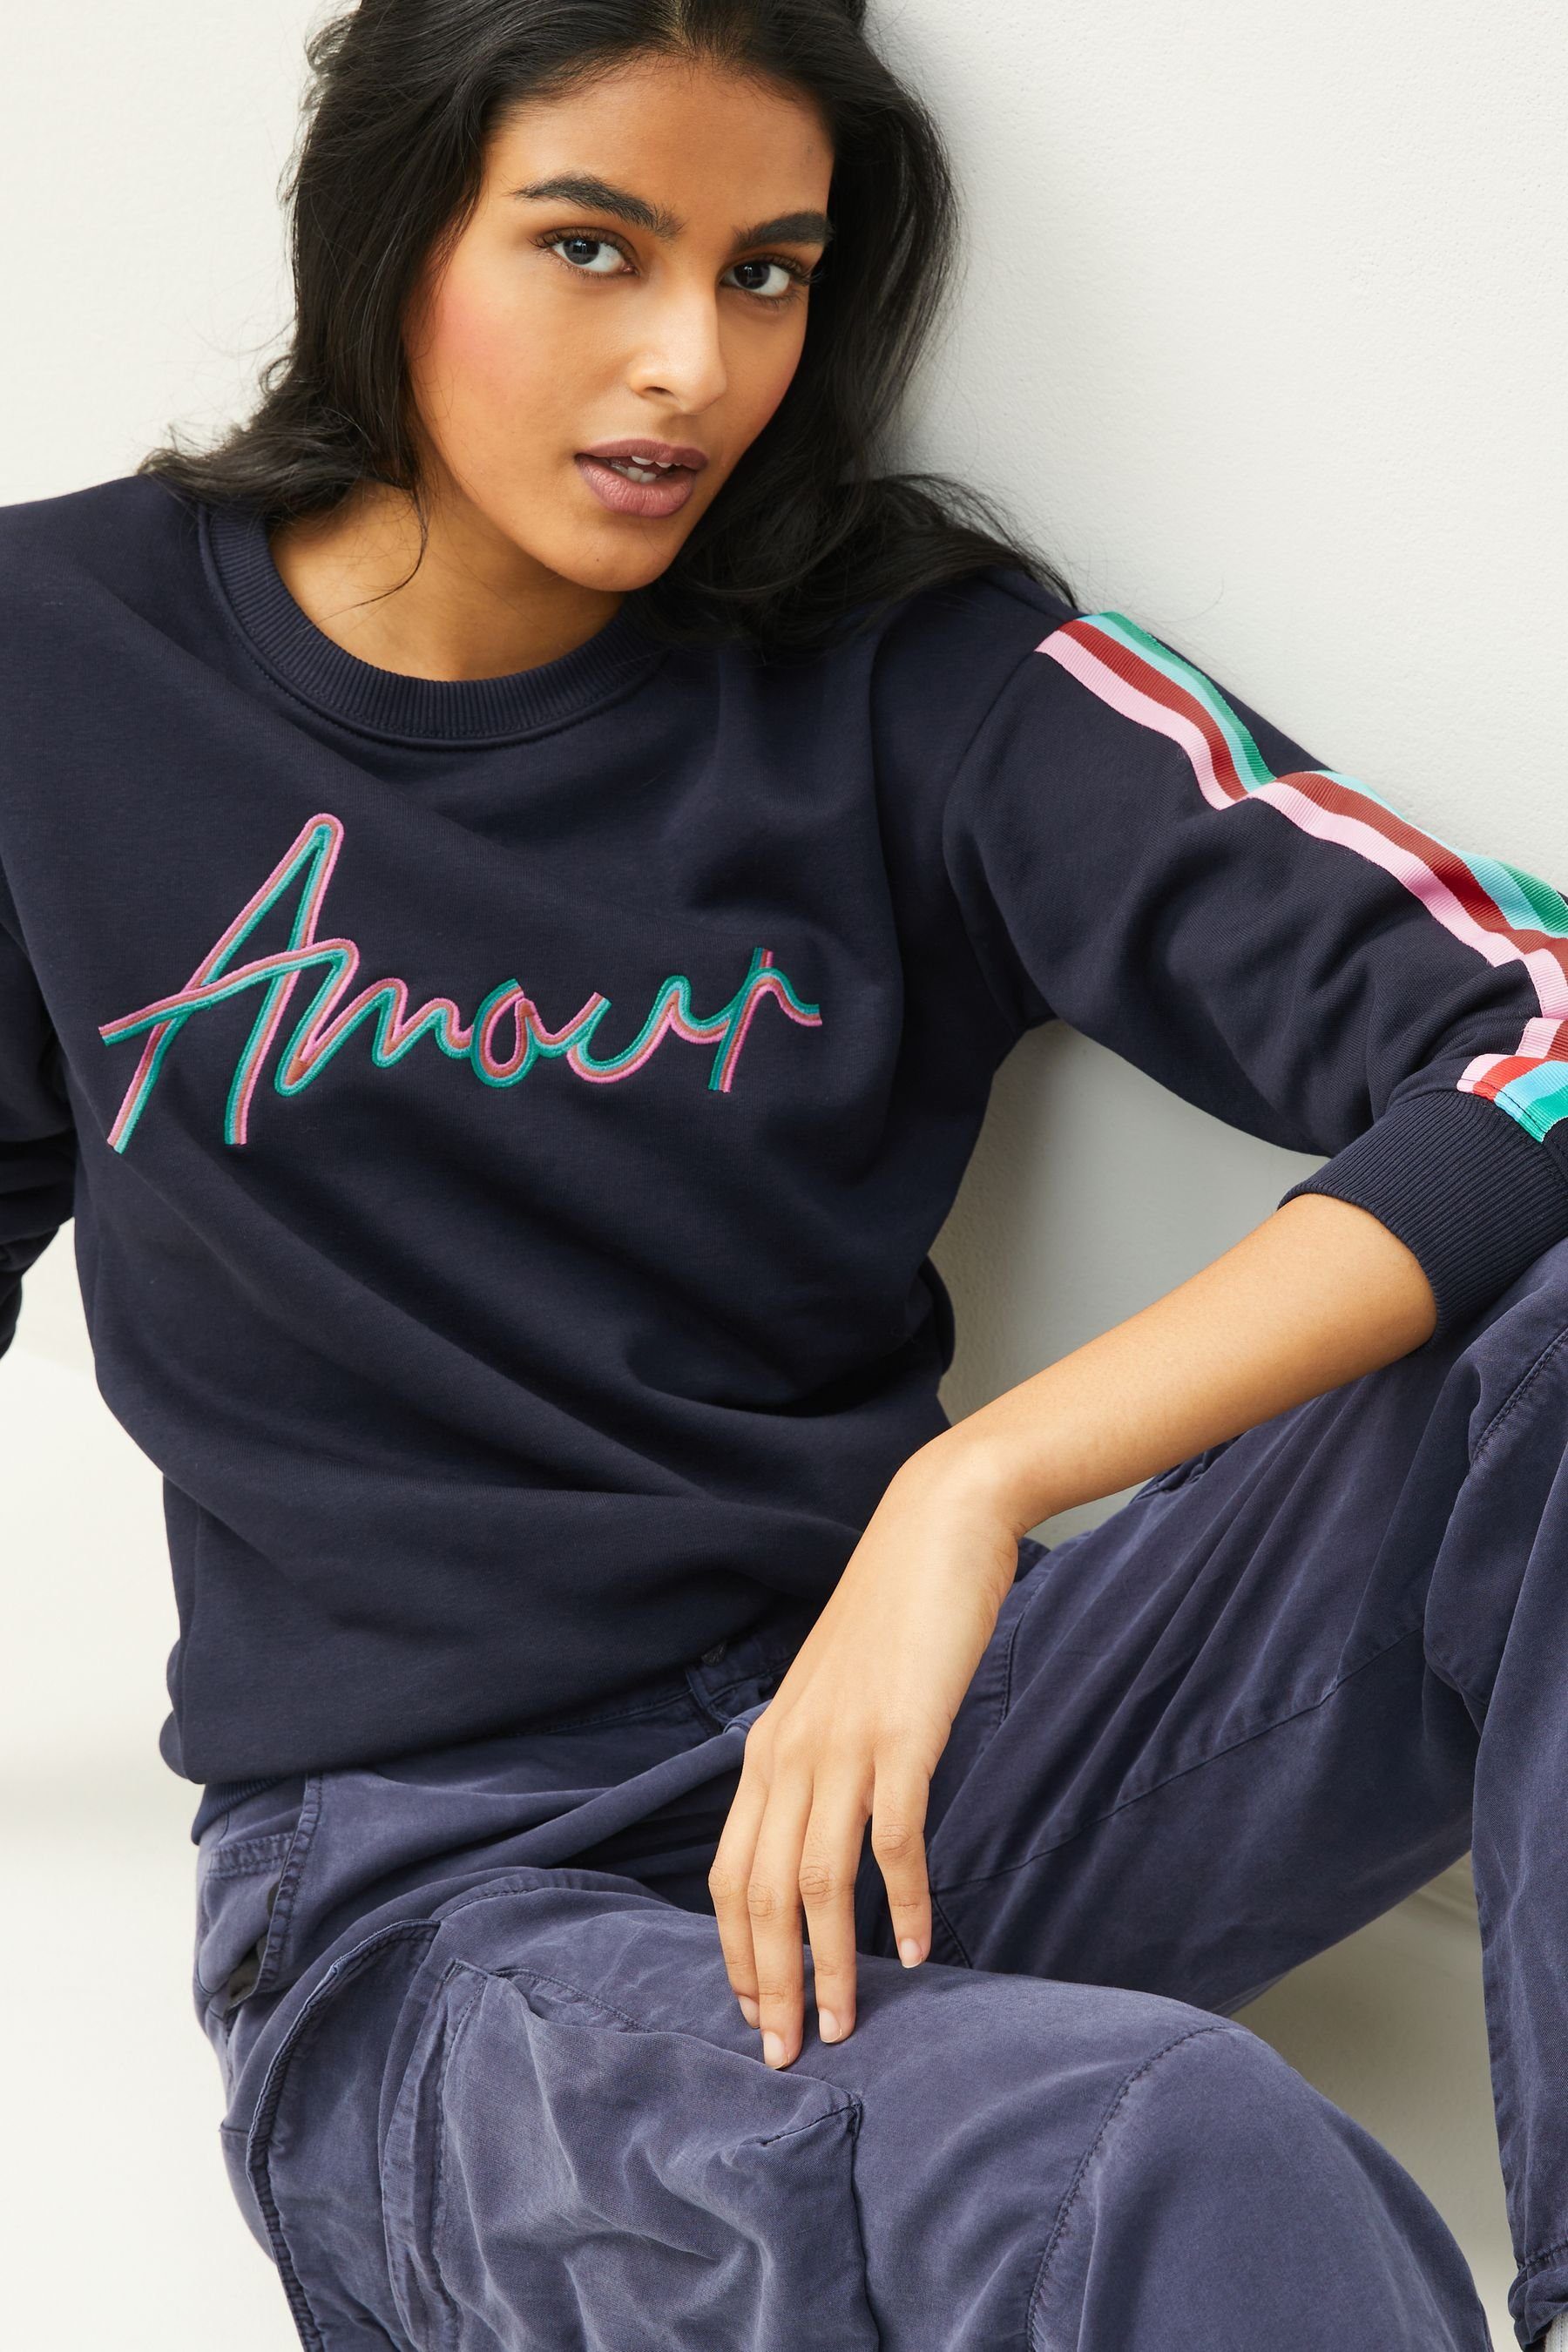 Next Sweatshirt bunten Sweatshirt in Farben (1-tlg) Amour